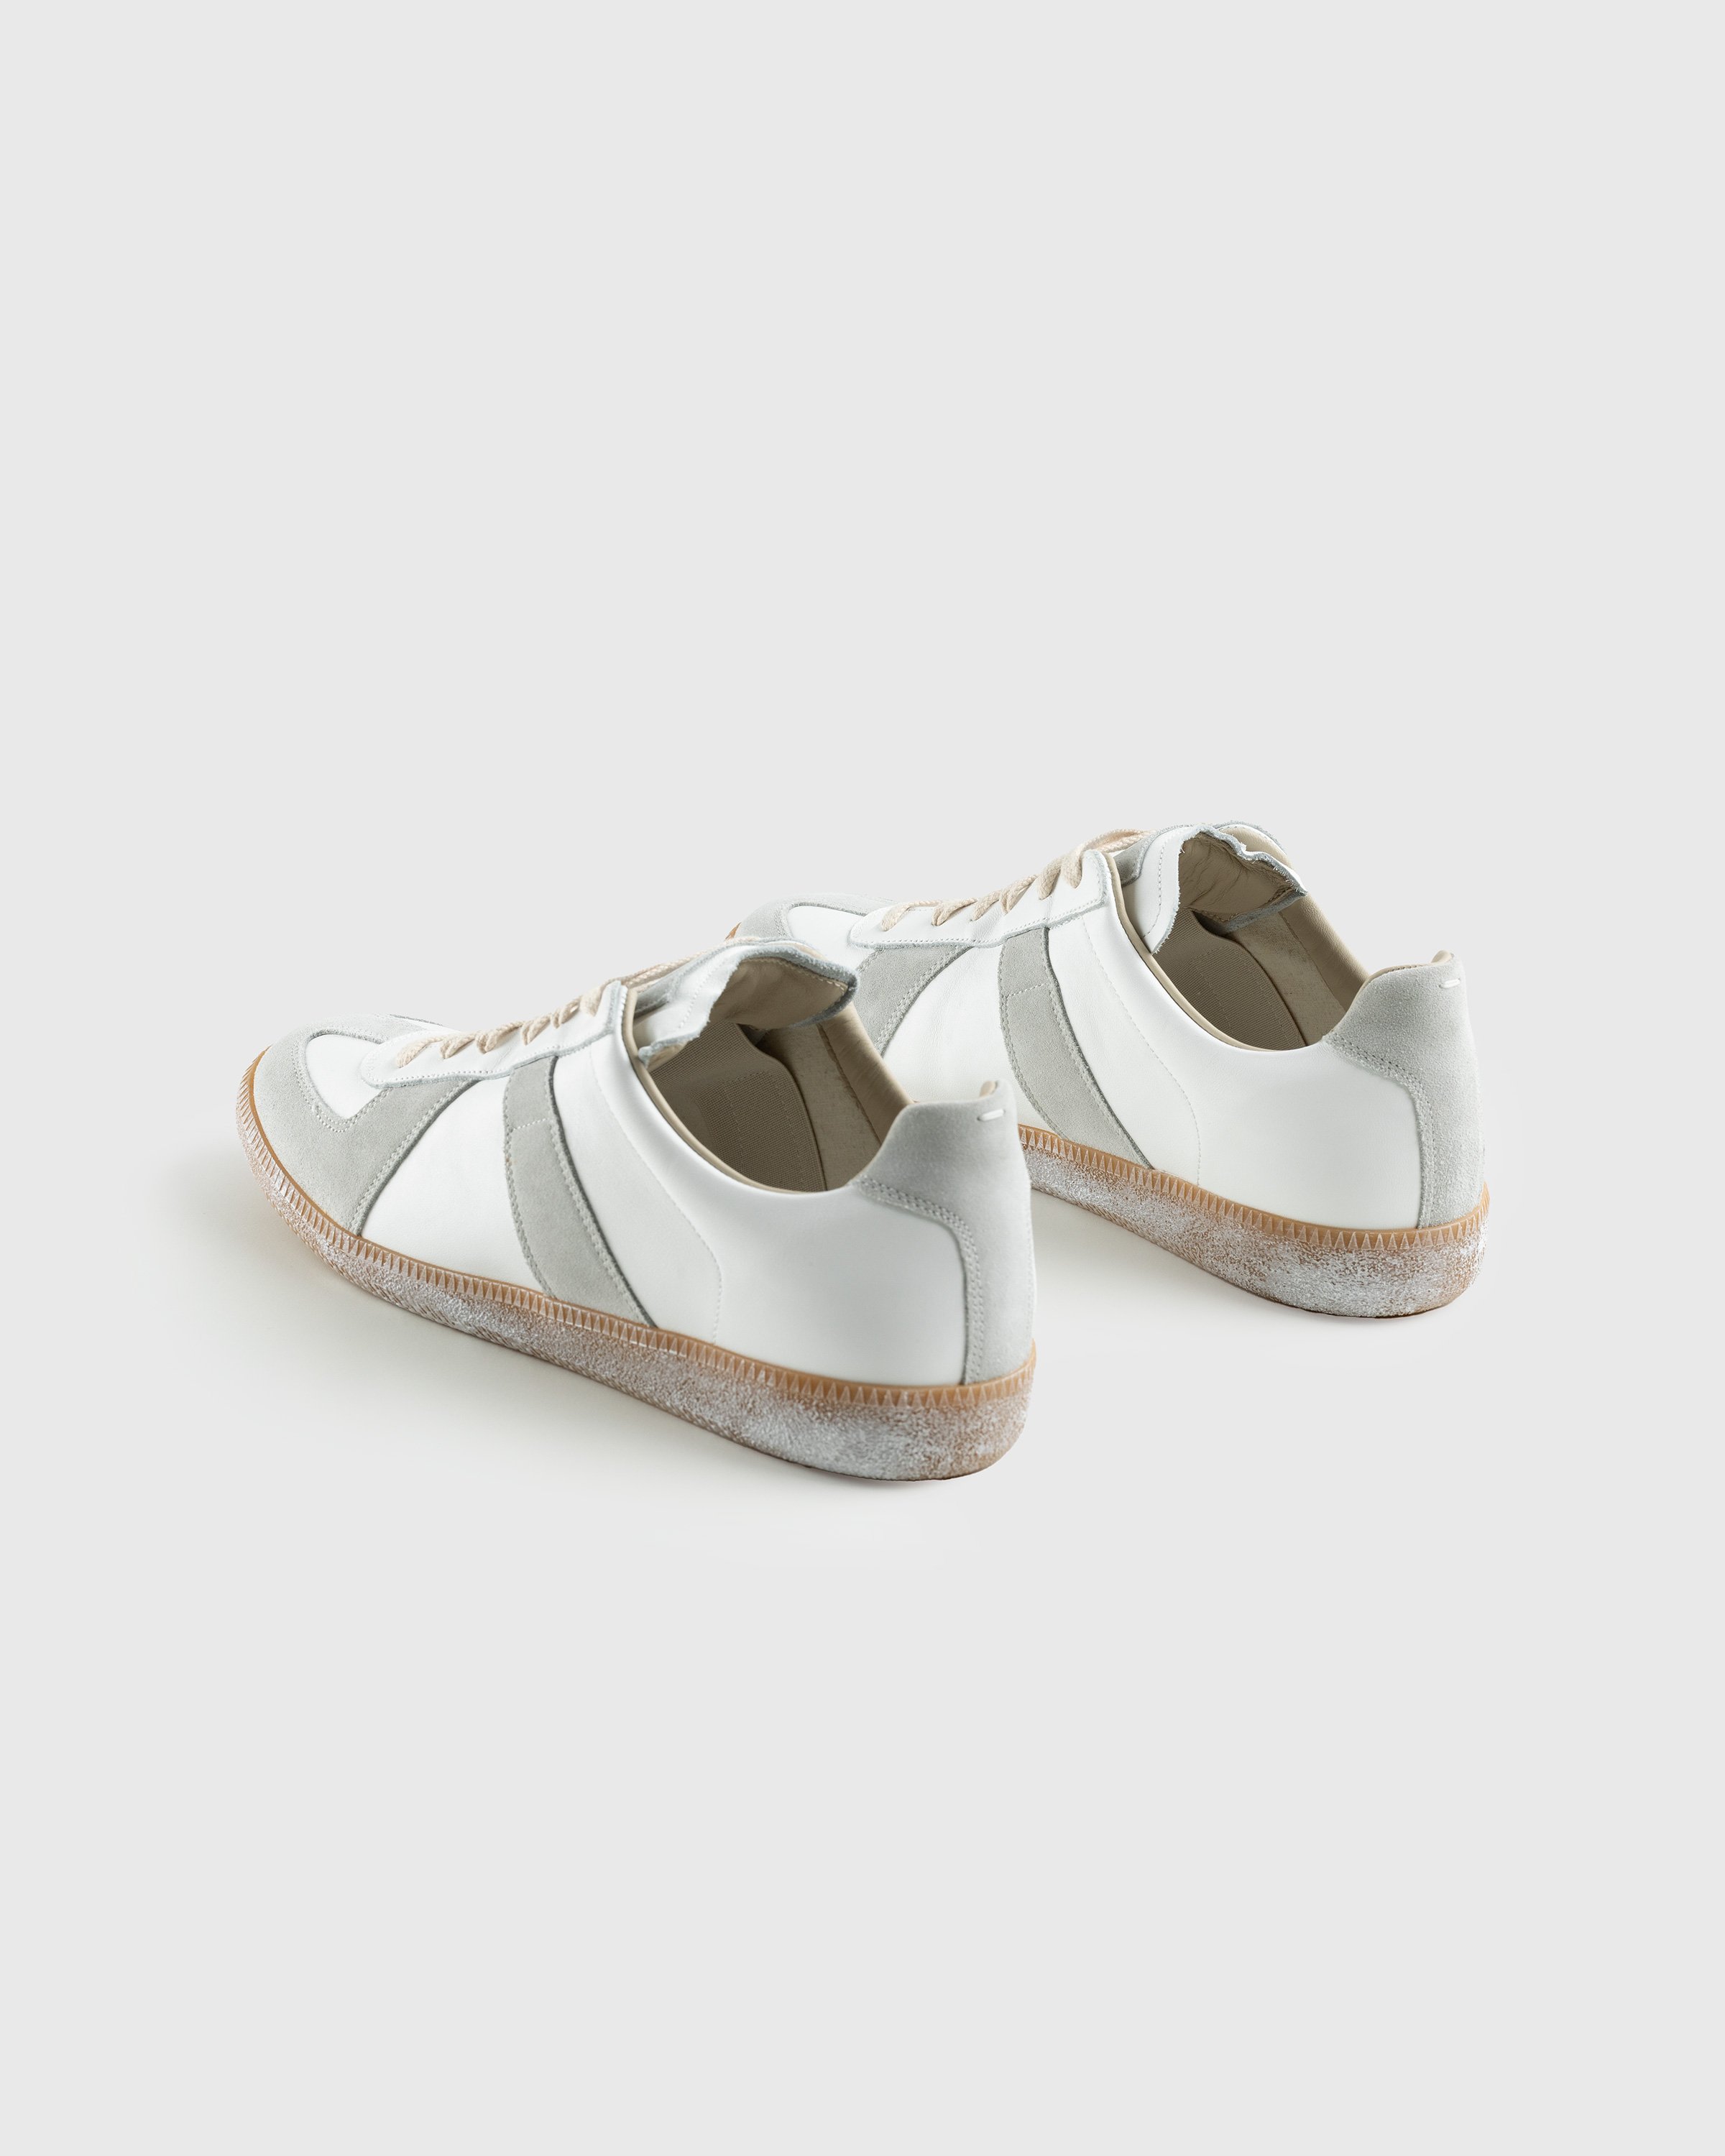 Maison Margiela - Replica Low Top All White - Footwear - Beige - Image 4